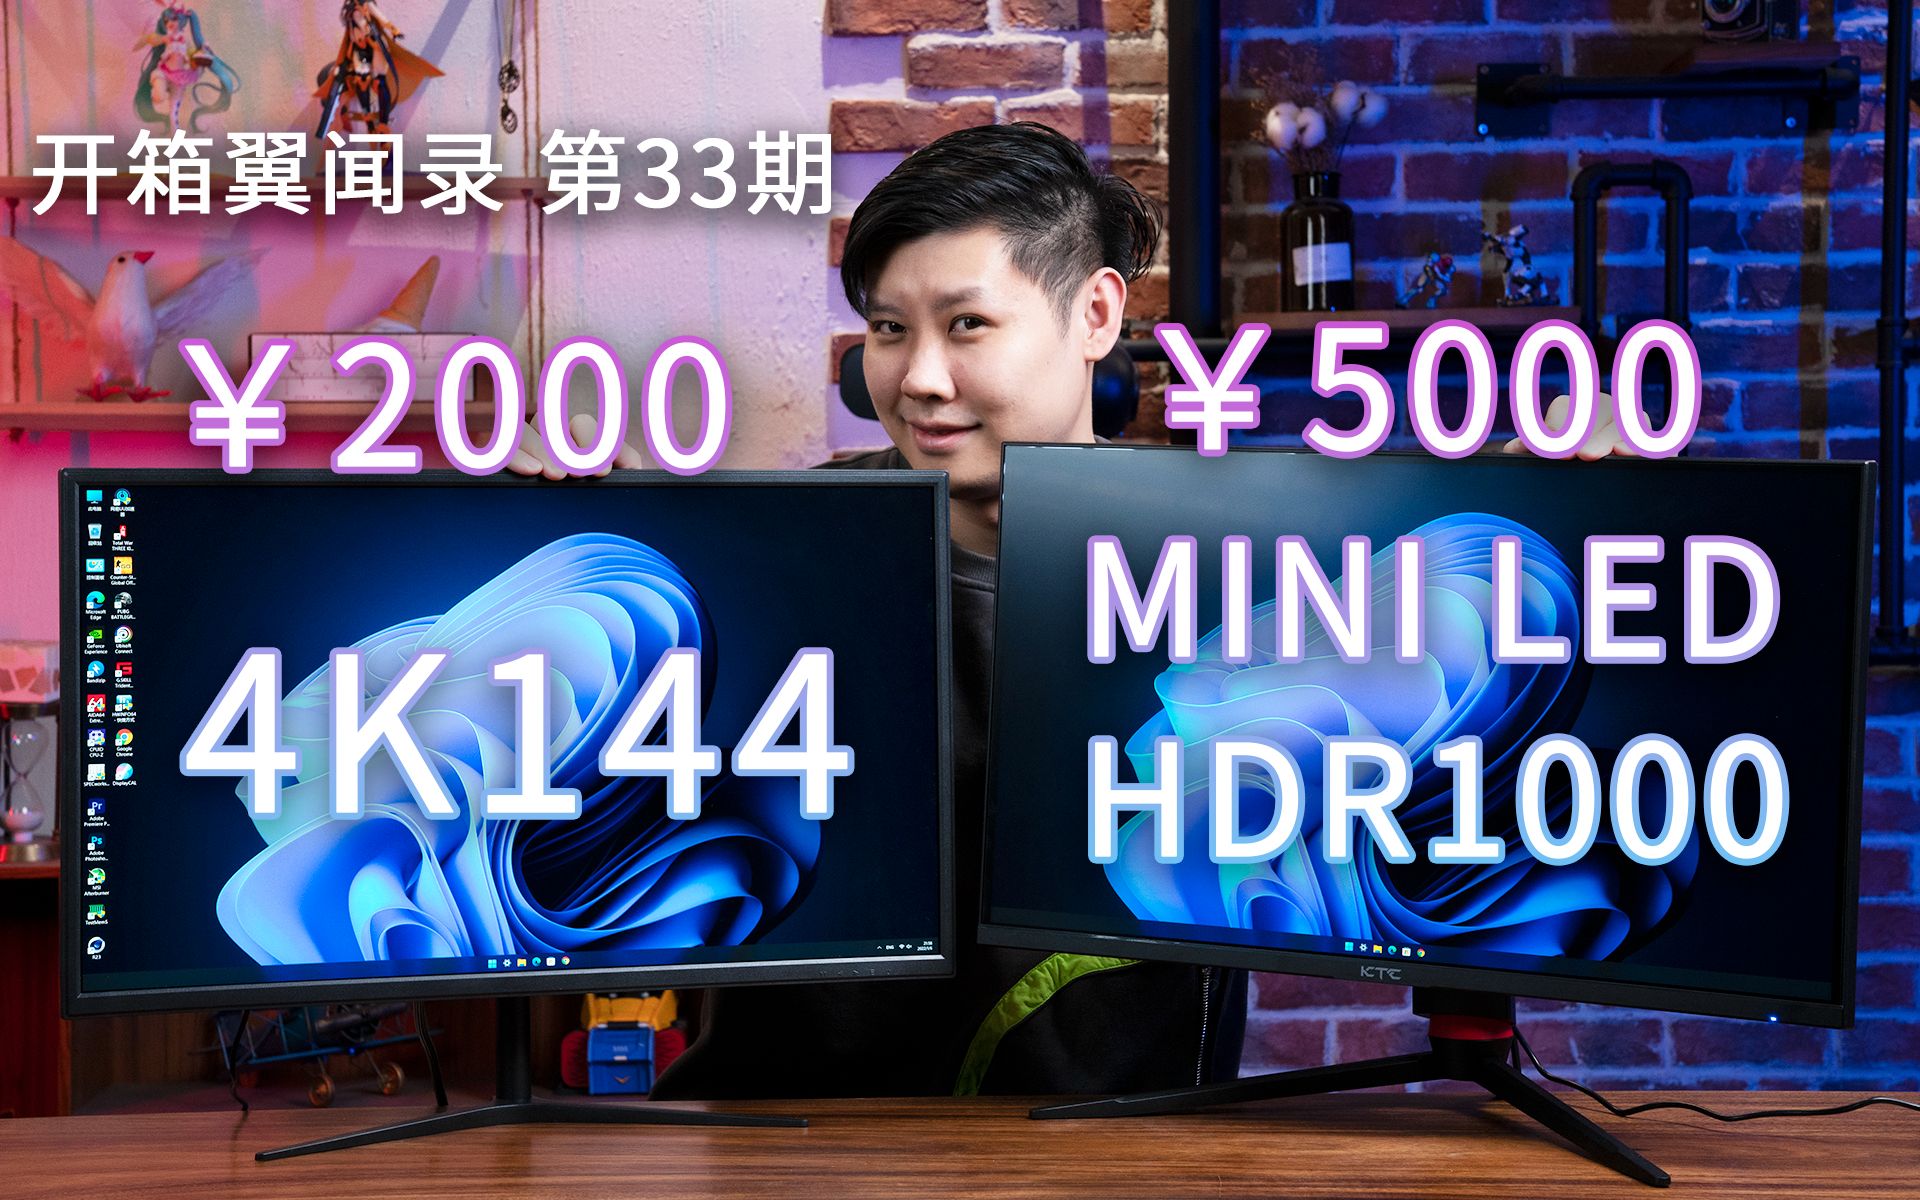 现在2000就能买到4K 144显示器了？5000还能买到MiniLED+HDR1000？【开箱翼闻录 第33期】